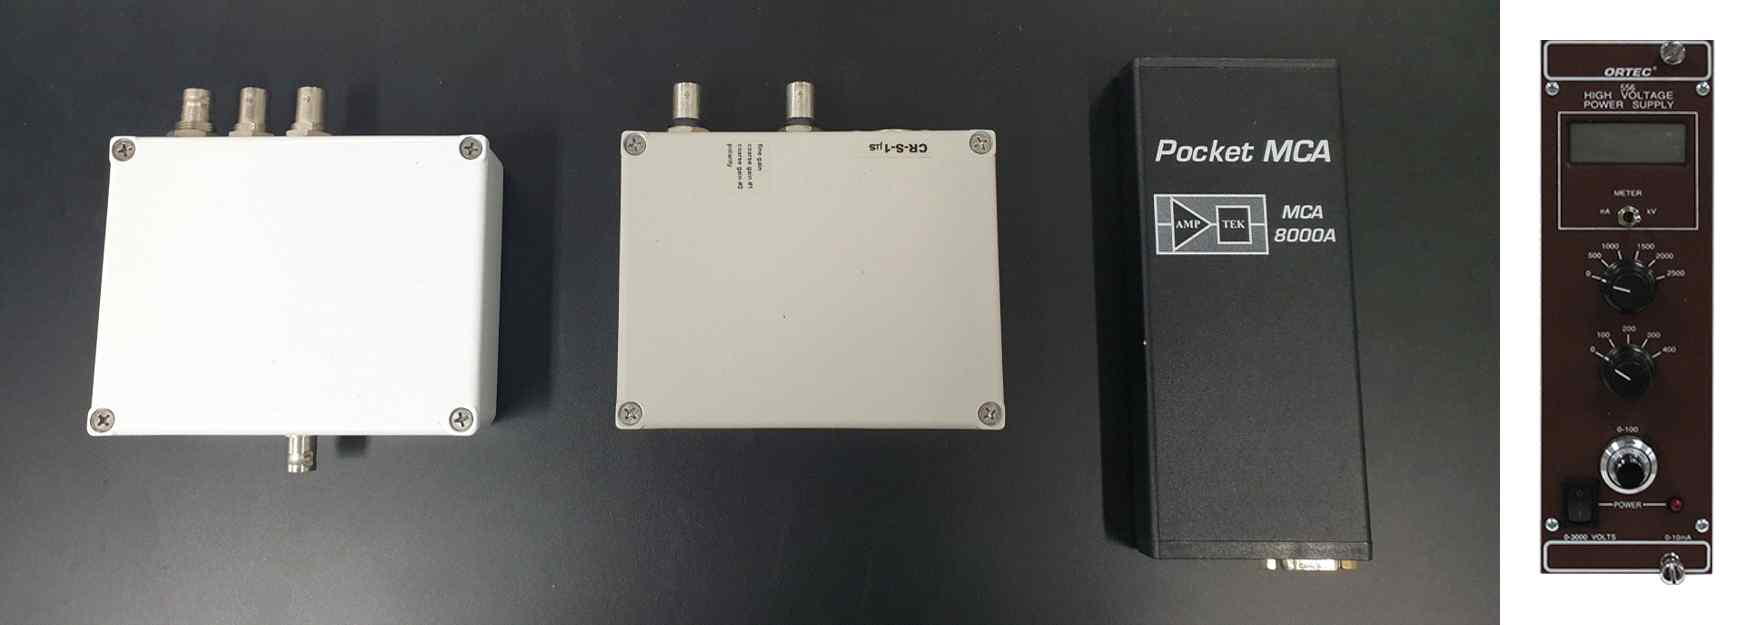 사용된 상용화 장비: (좌측부터) Cremat사의 CR-Z-110-HV, CR-S-1㎲, Amptek사의 MCA8000A, Ortec사의 556 high voltage power supply